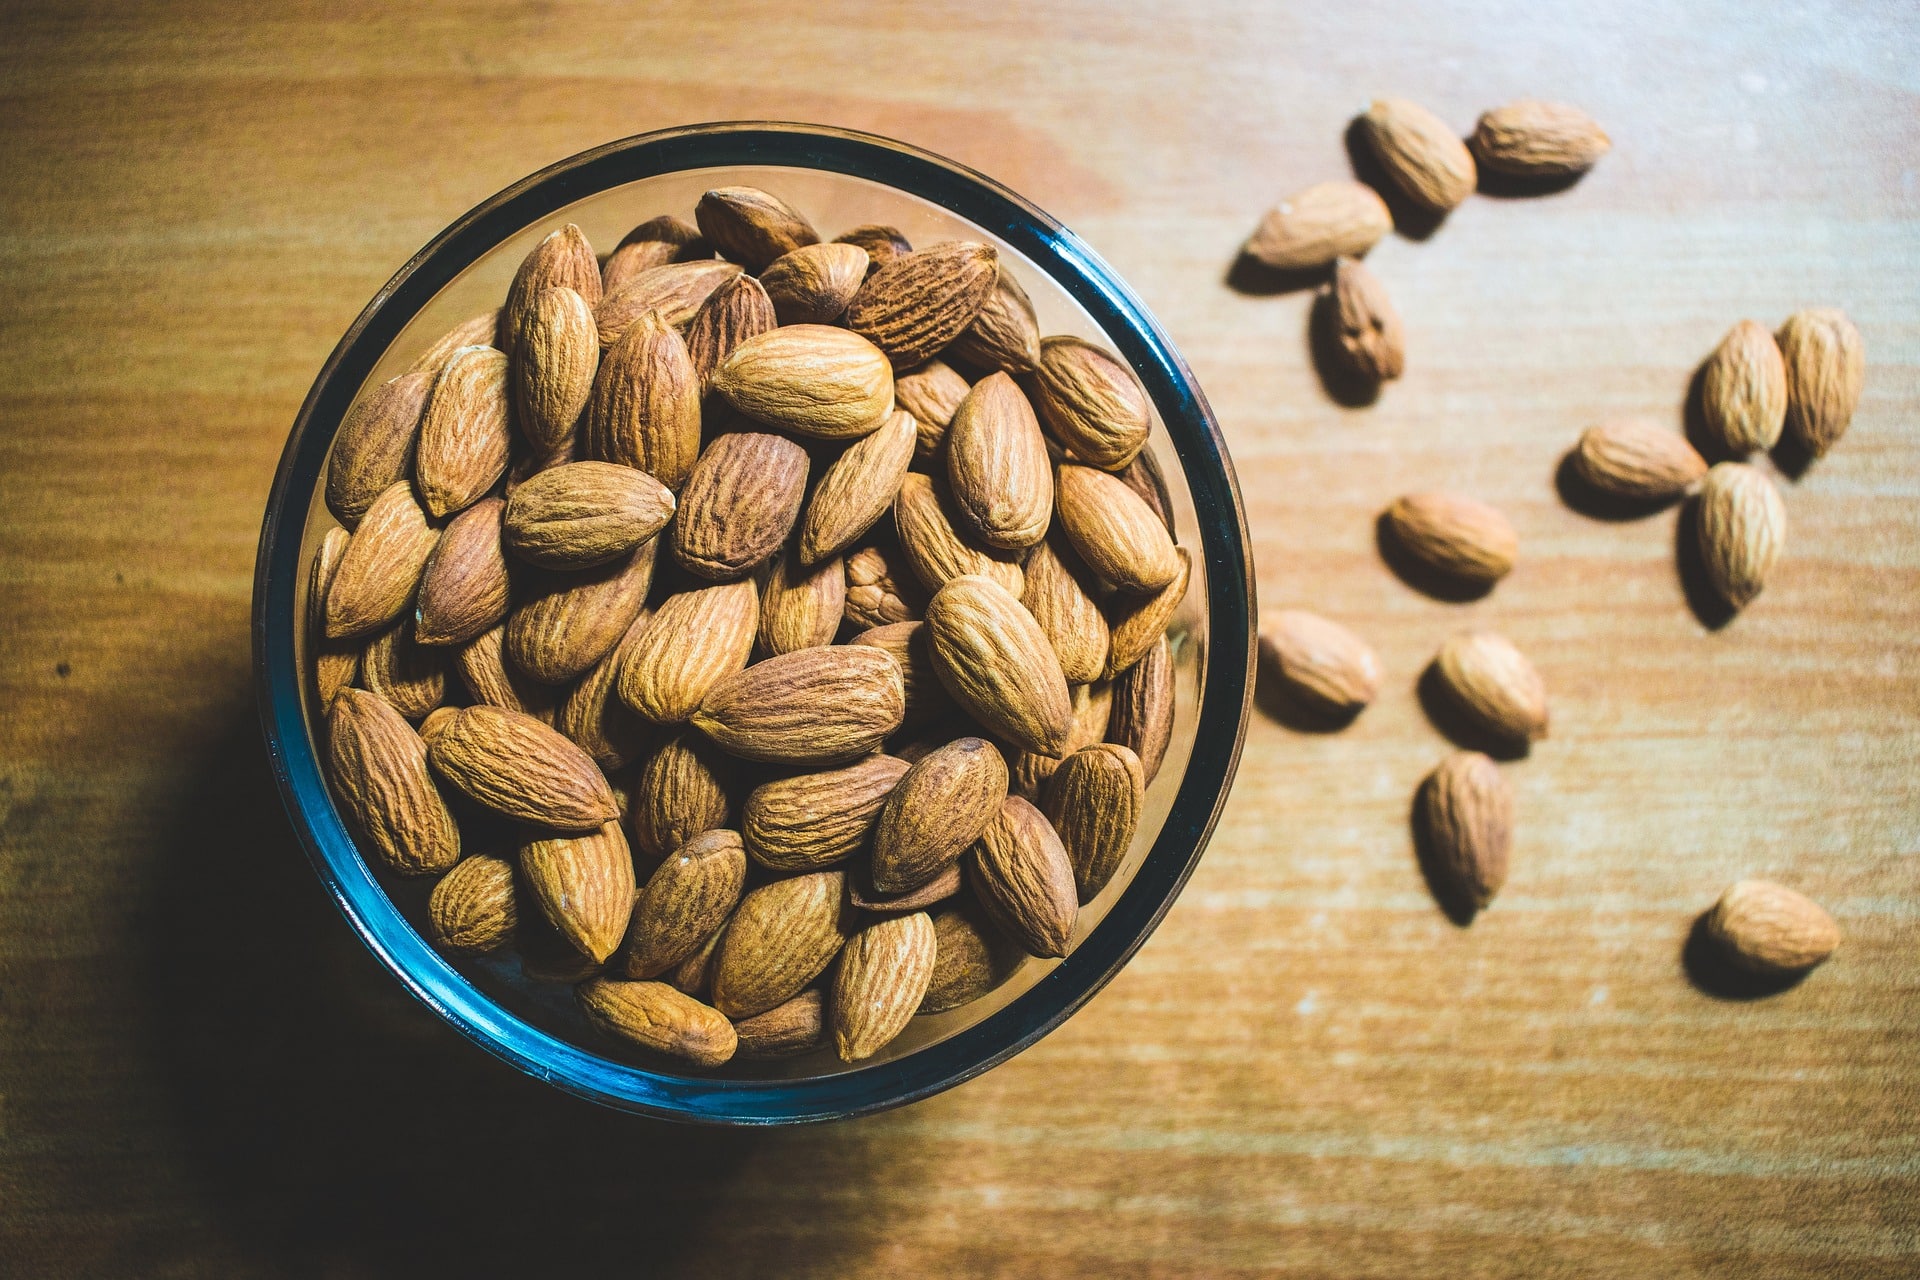 a inclusao de amendoas poderia ajudar a prevenir o desenvolvimento de diabetes ou outras doencas